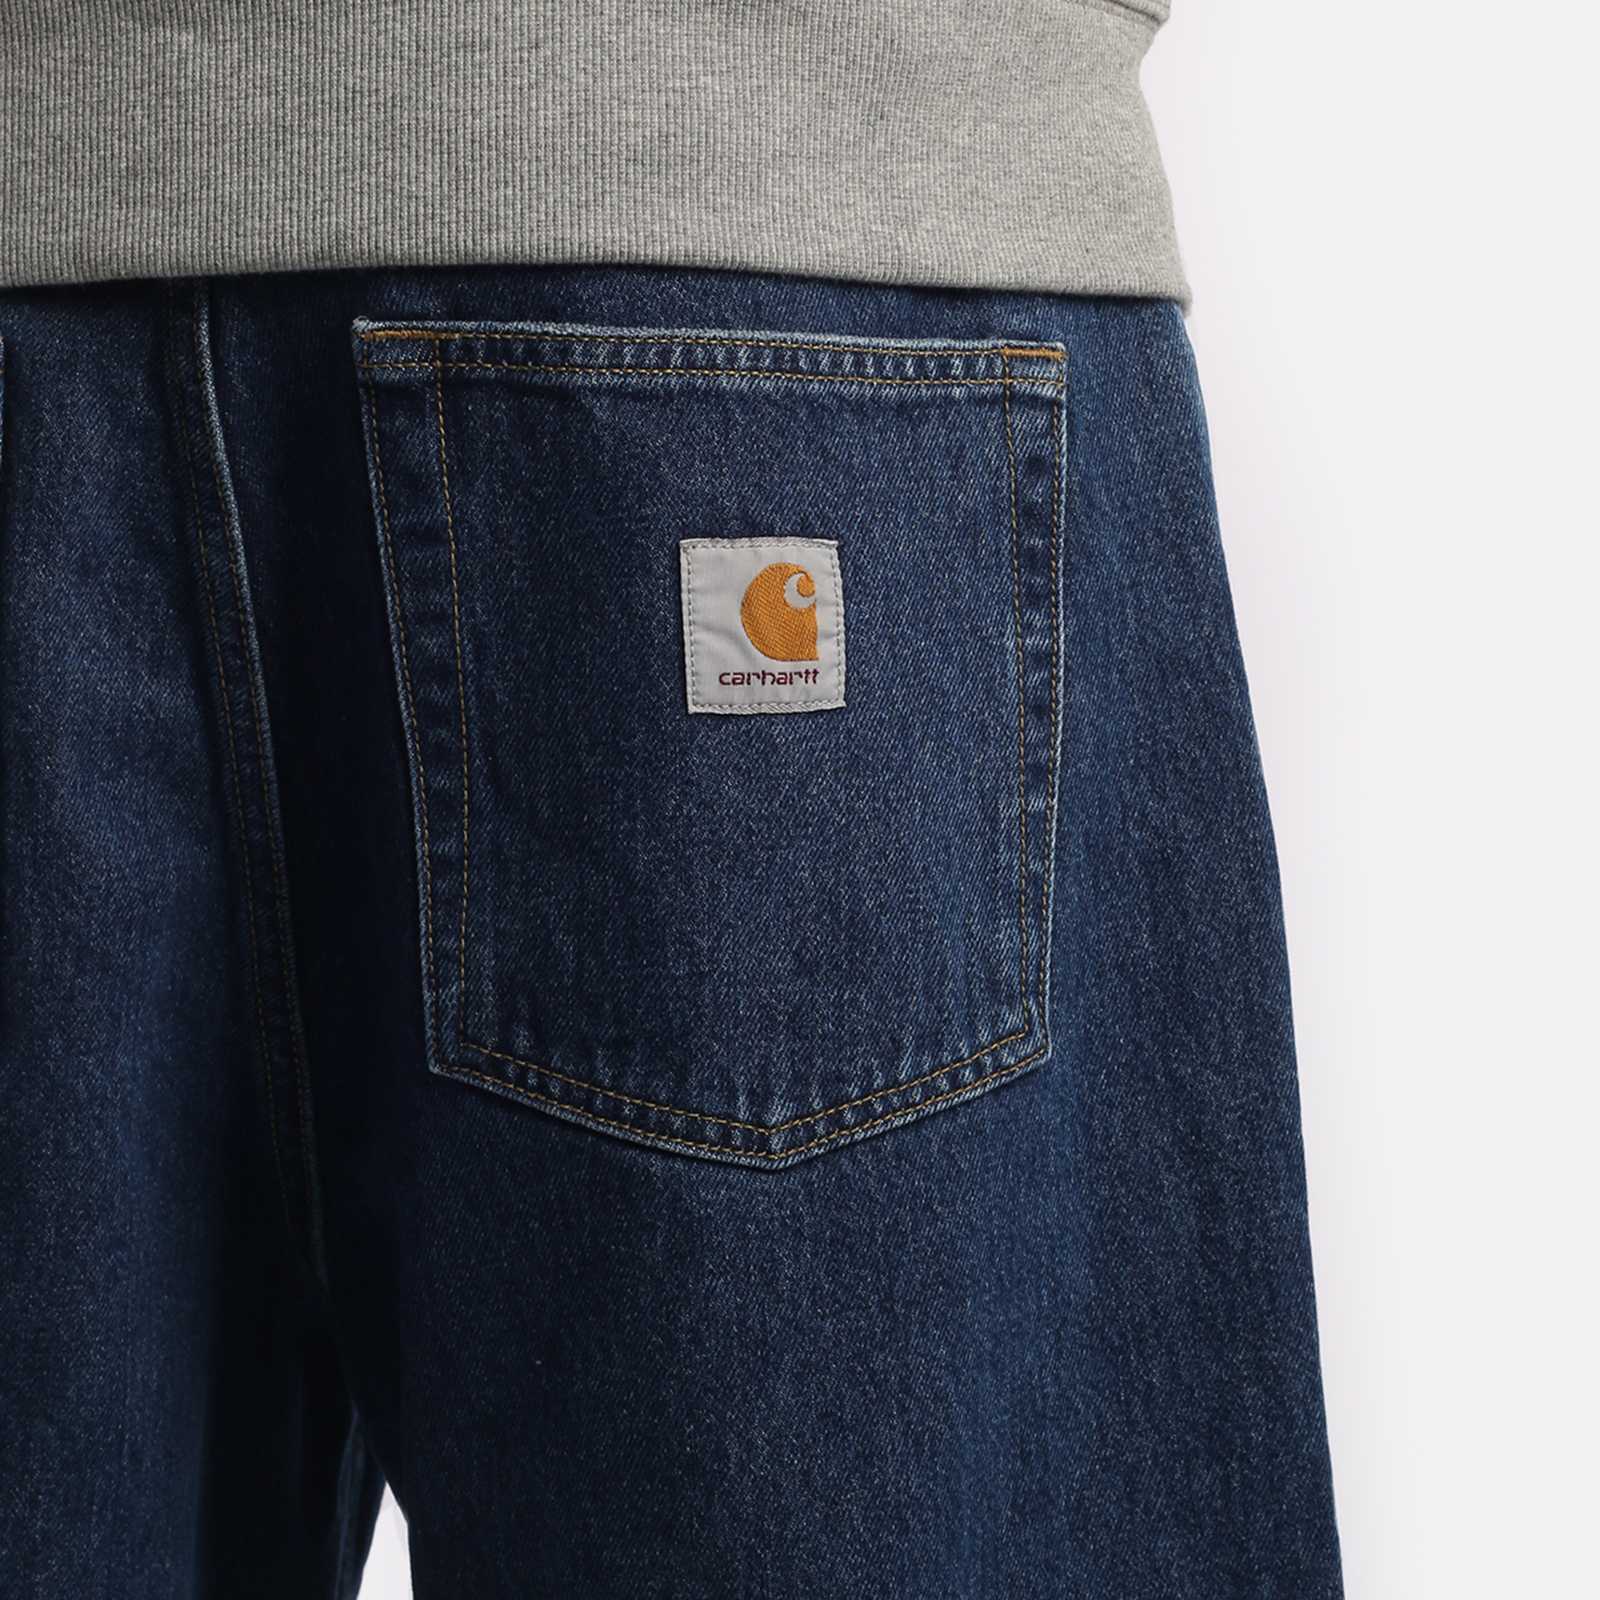 мужские брюки Carhartt WIP Smith  (I031246-blue)  - цена, описание, фото 4